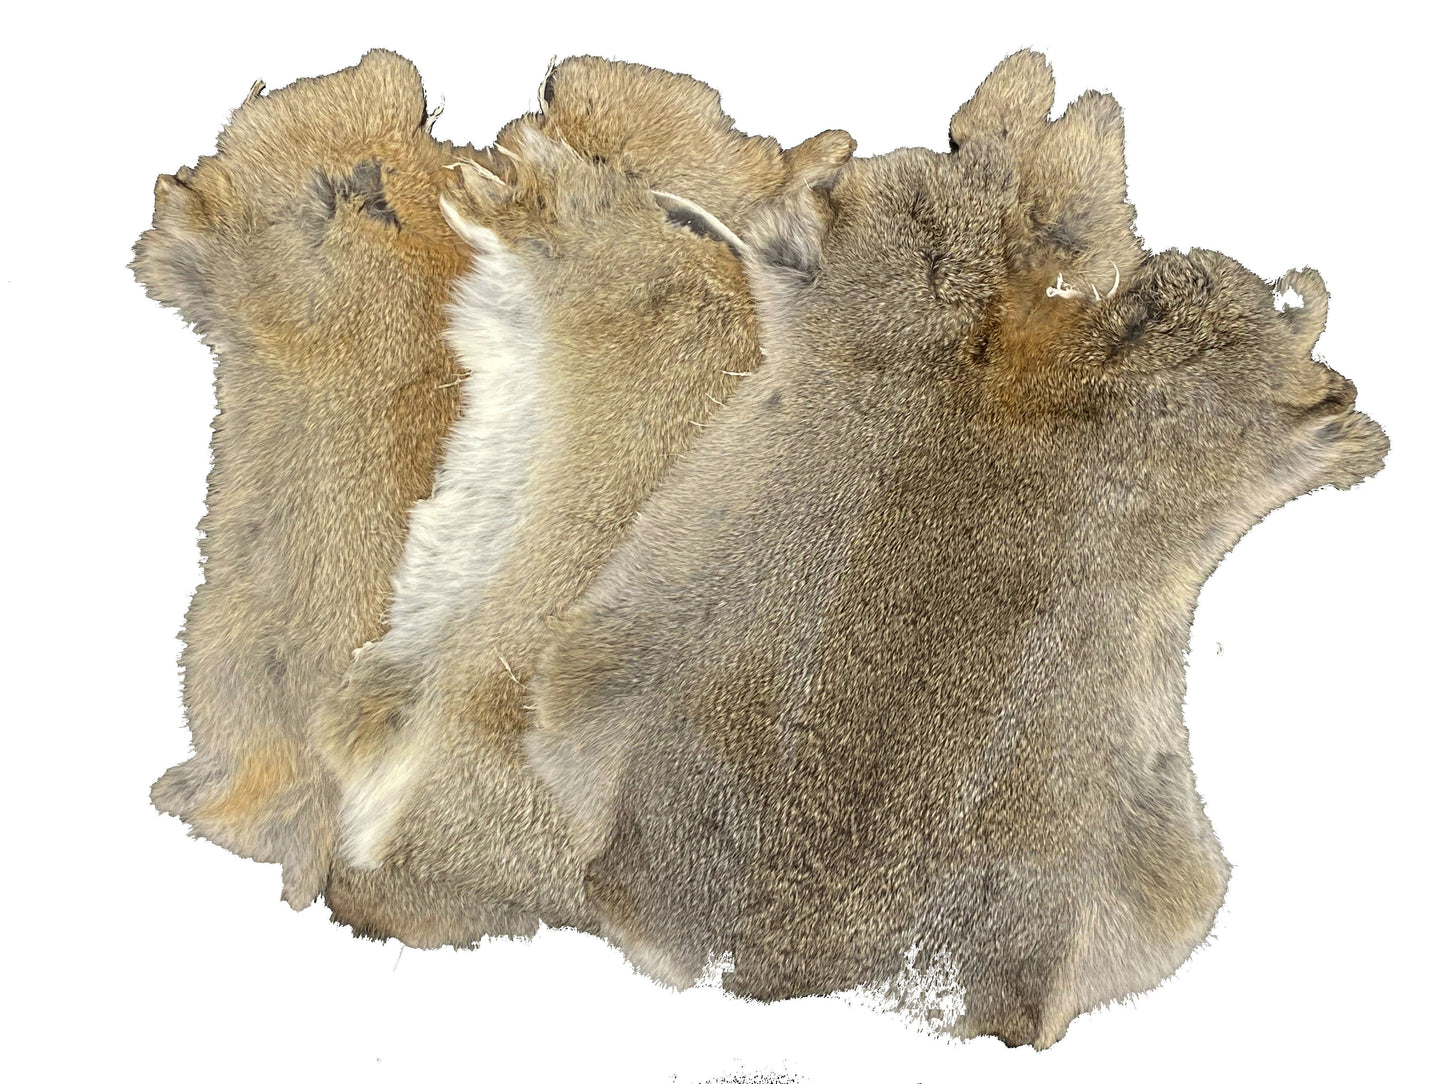 1 Pcs Natural Color Rabbit Fur Pelts - Craft Grade Assorted!